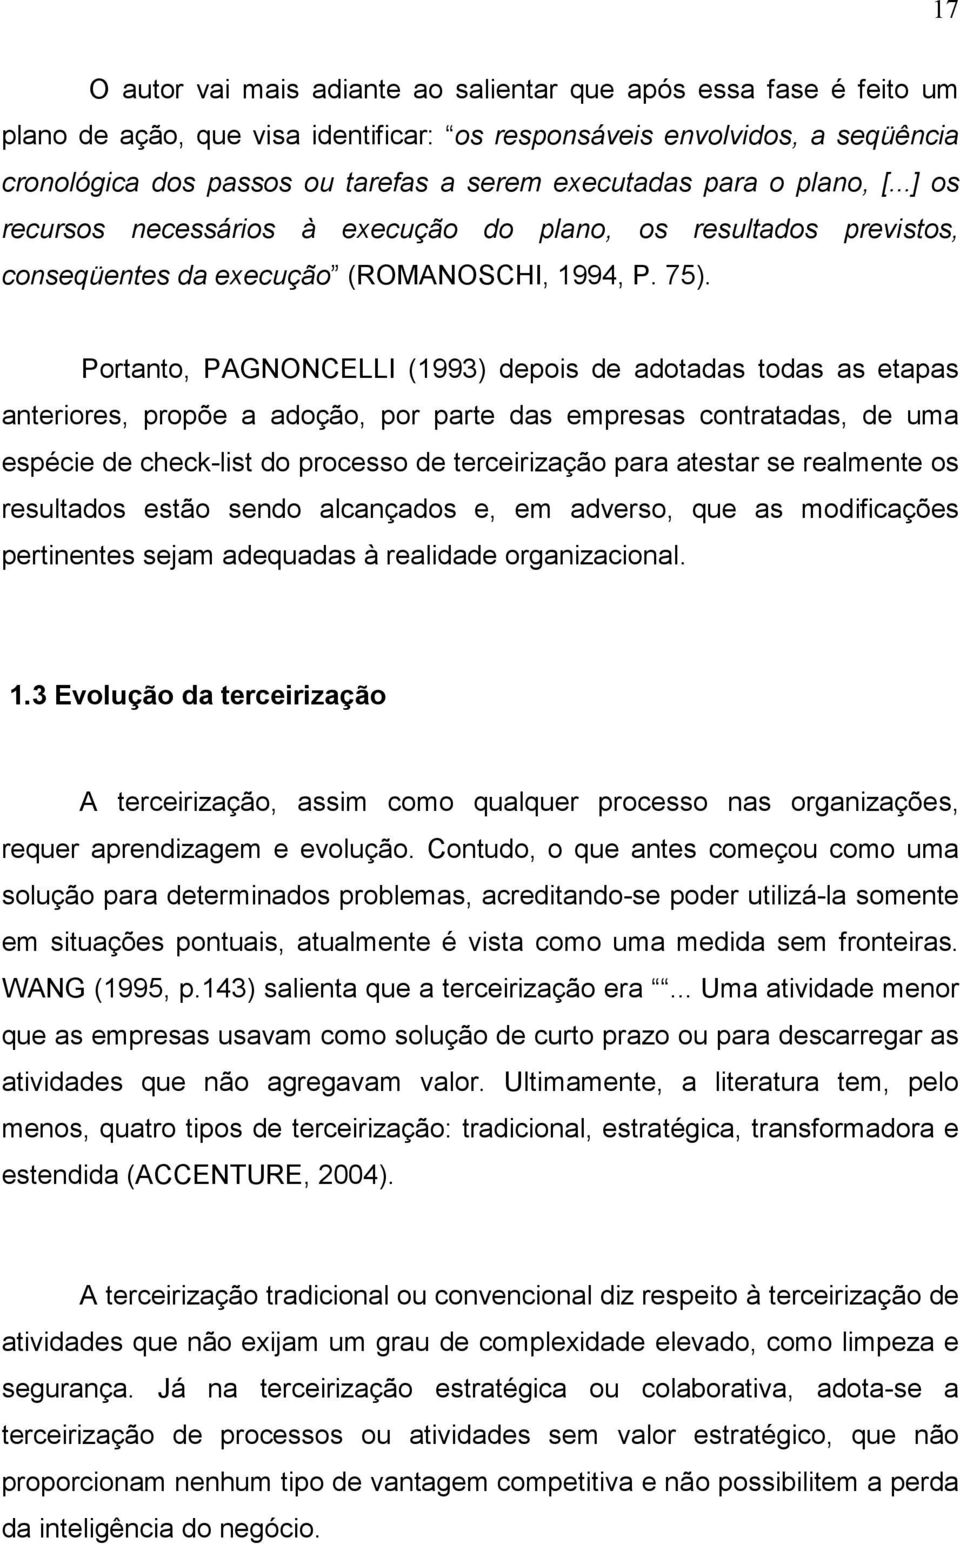 Portanto, PAGNONCELLI (1993) depois de adotadas todas as etapas anteriores, propõe a adoção, por parte das empresas contratadas, de uma espécie de check-list do processo de terceirização para atestar